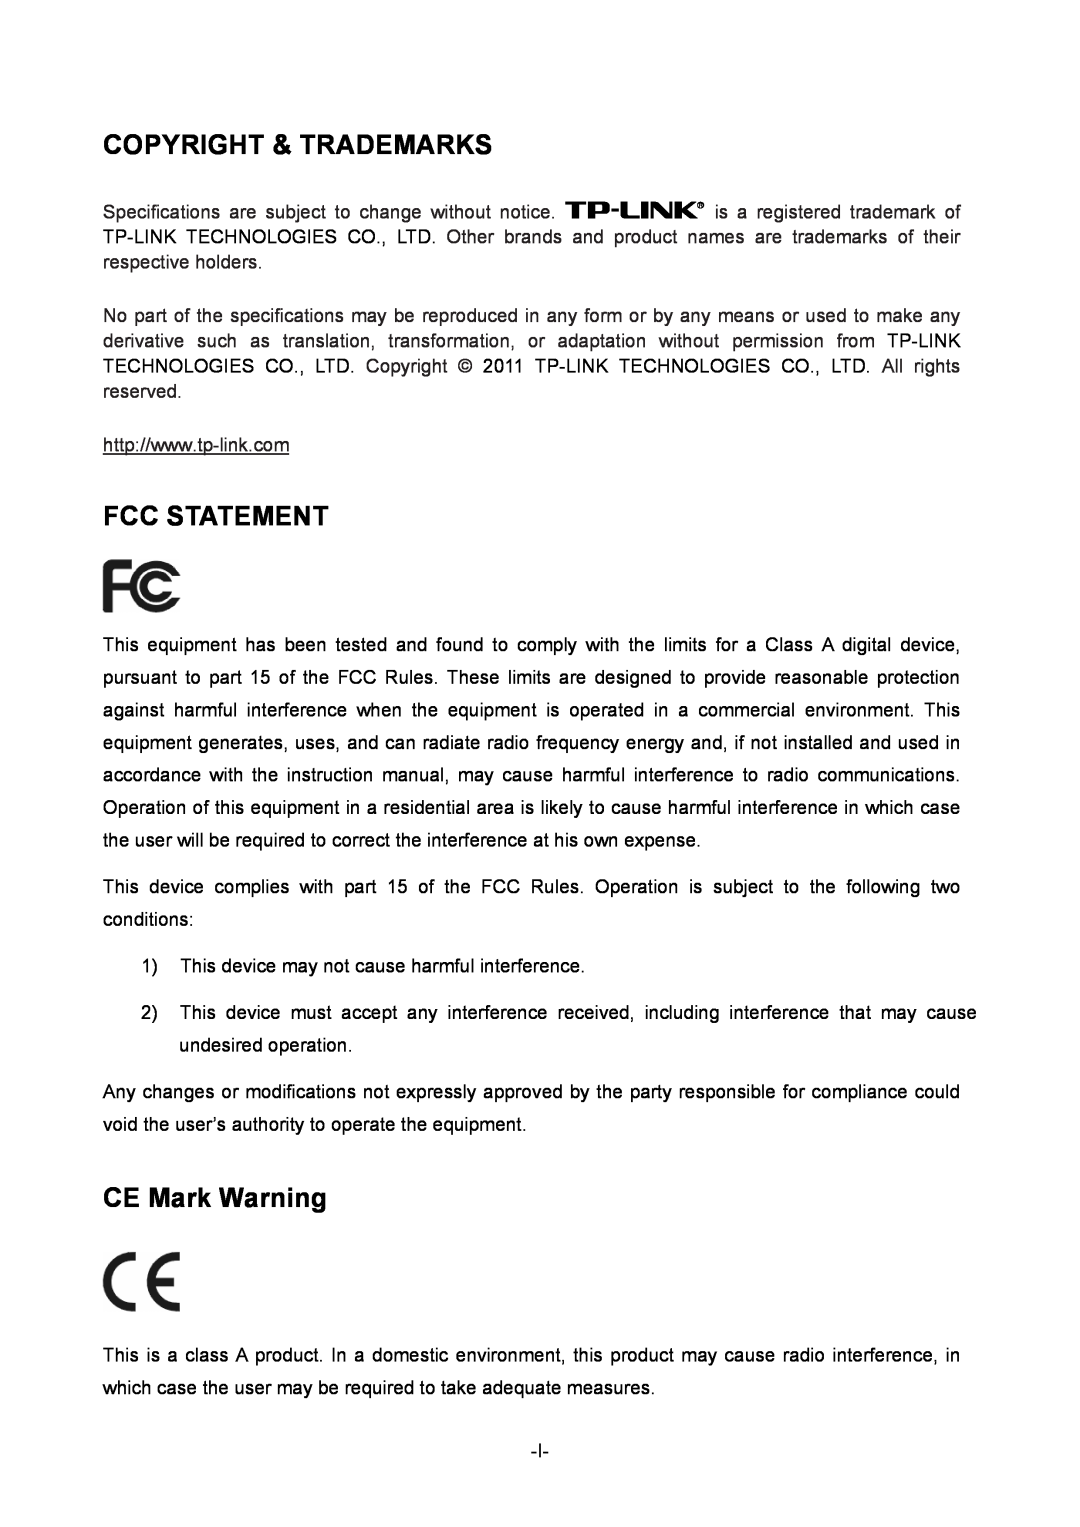 TP-Link TL-ER6120 manual Copyright & Trademarks, Fcc Statement, CE Mark Warning 